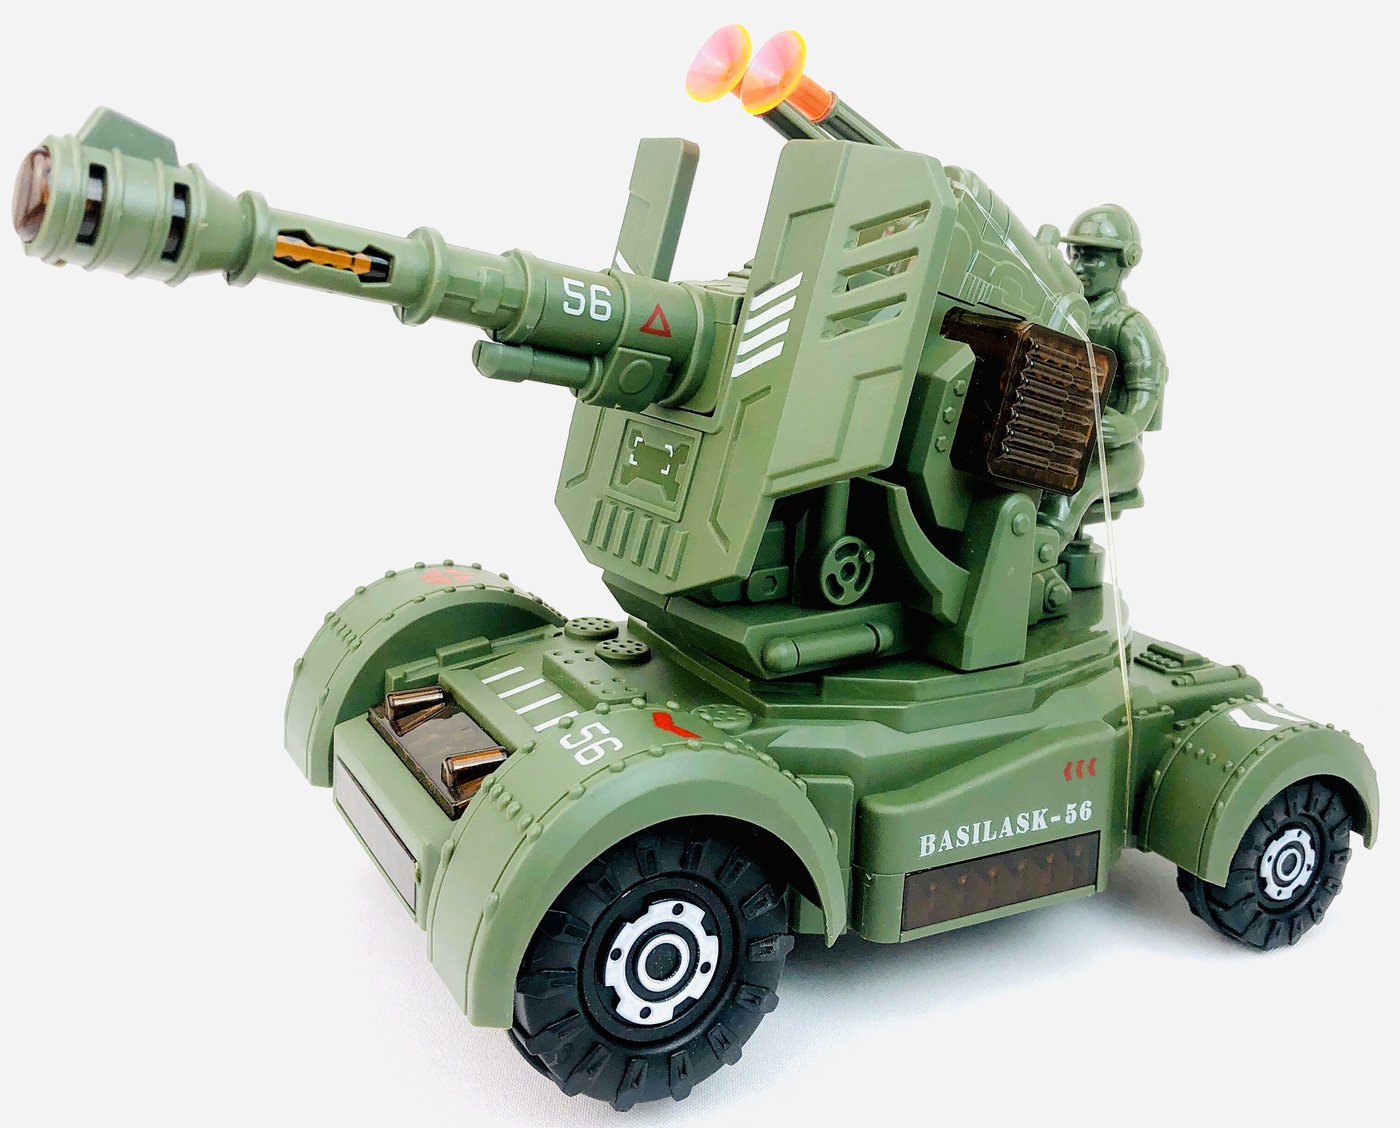 Военная техника Klox Toys Basilask-56 пушка гаубица с фигурками солдат, подвижная пушка